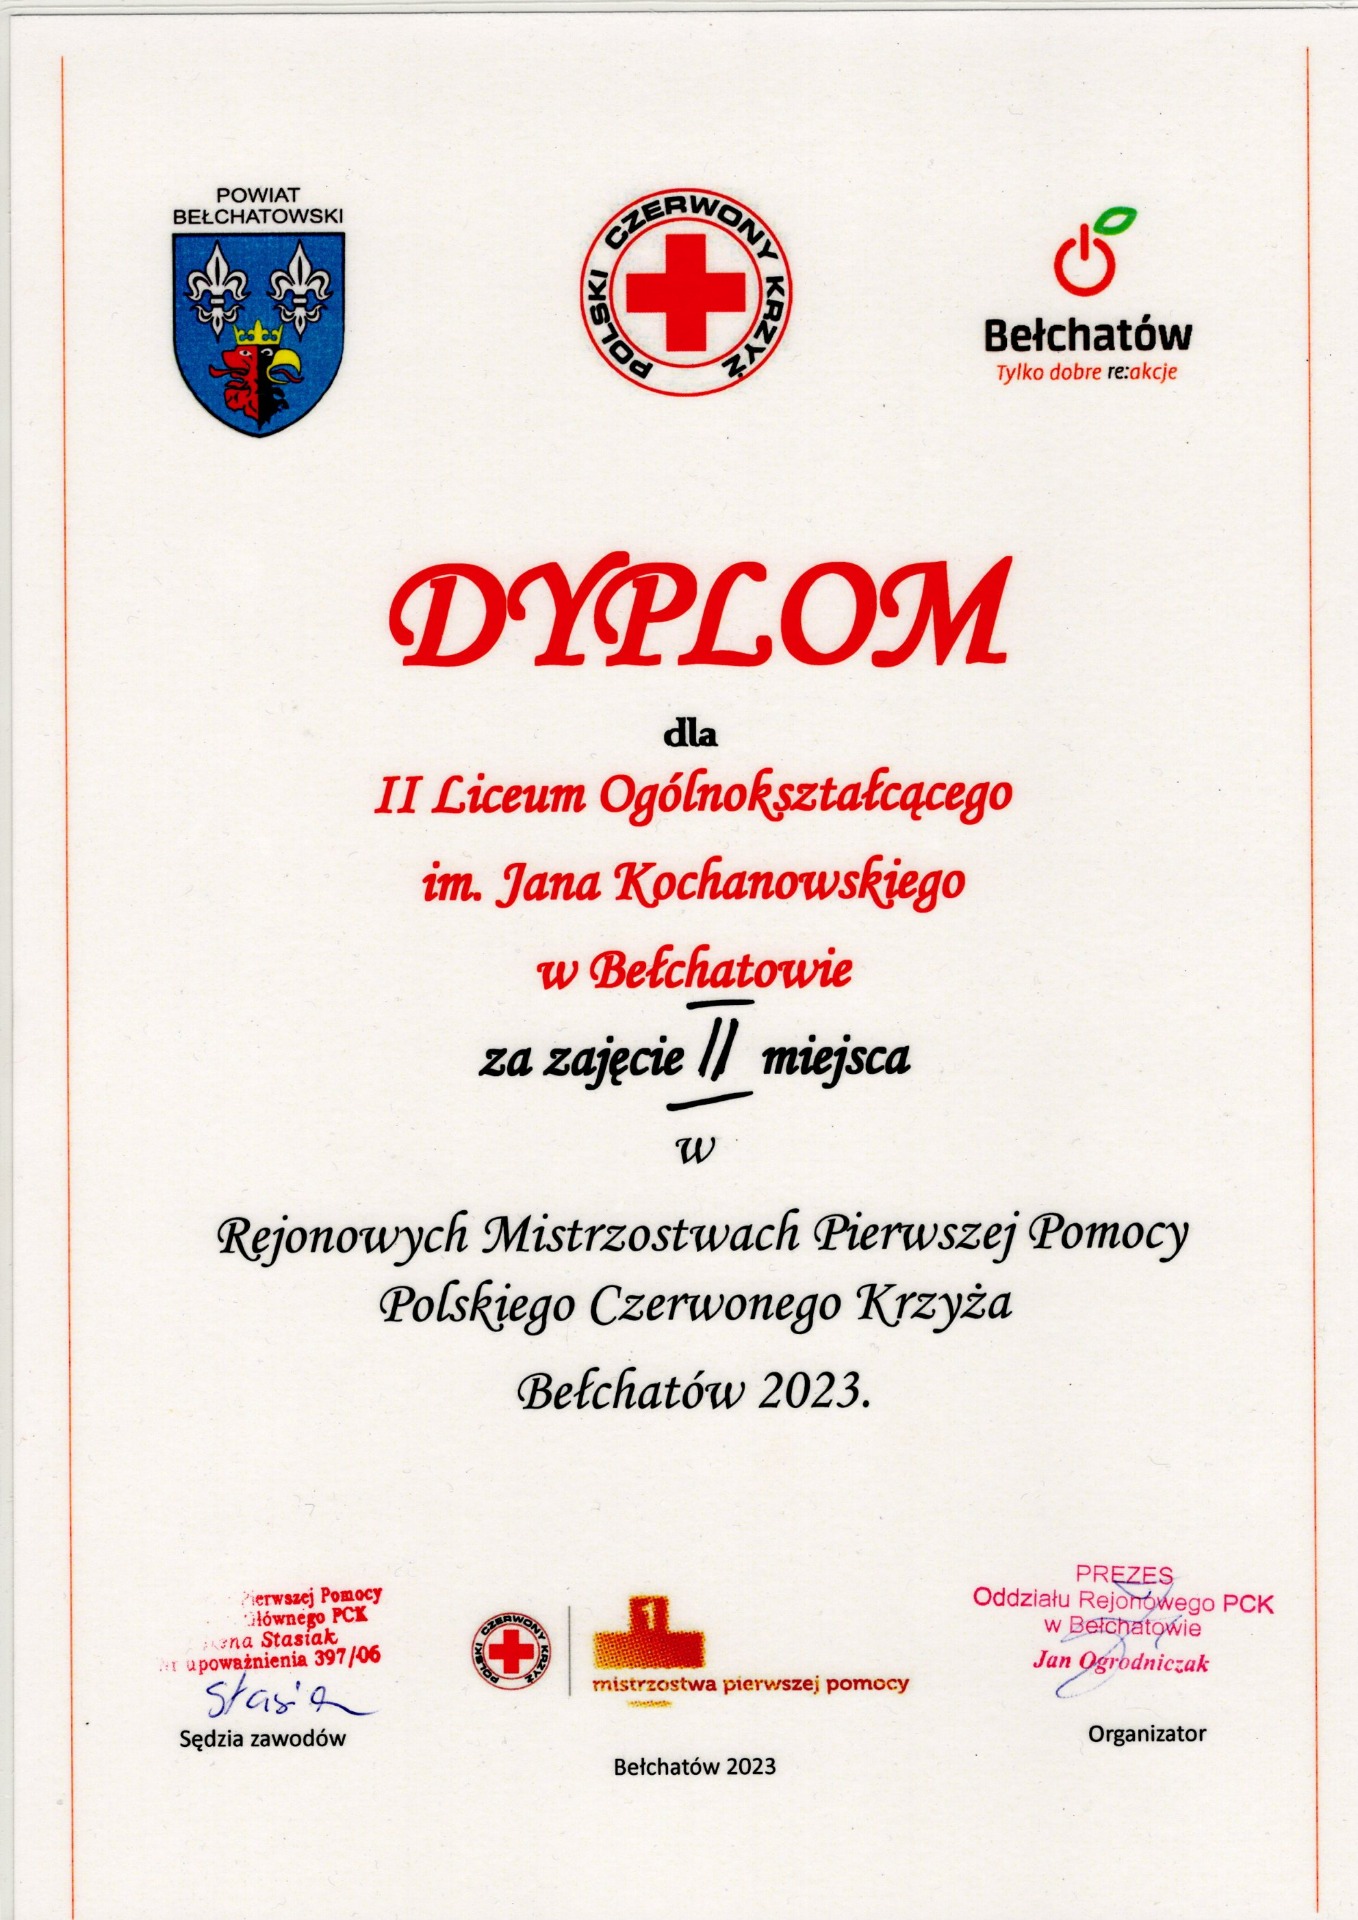 Dyplom za zajęcie II miejsca w Rejonowych Mistrzostwach Pierwszej Pomocy Polskiego Czerwonego Krzyża